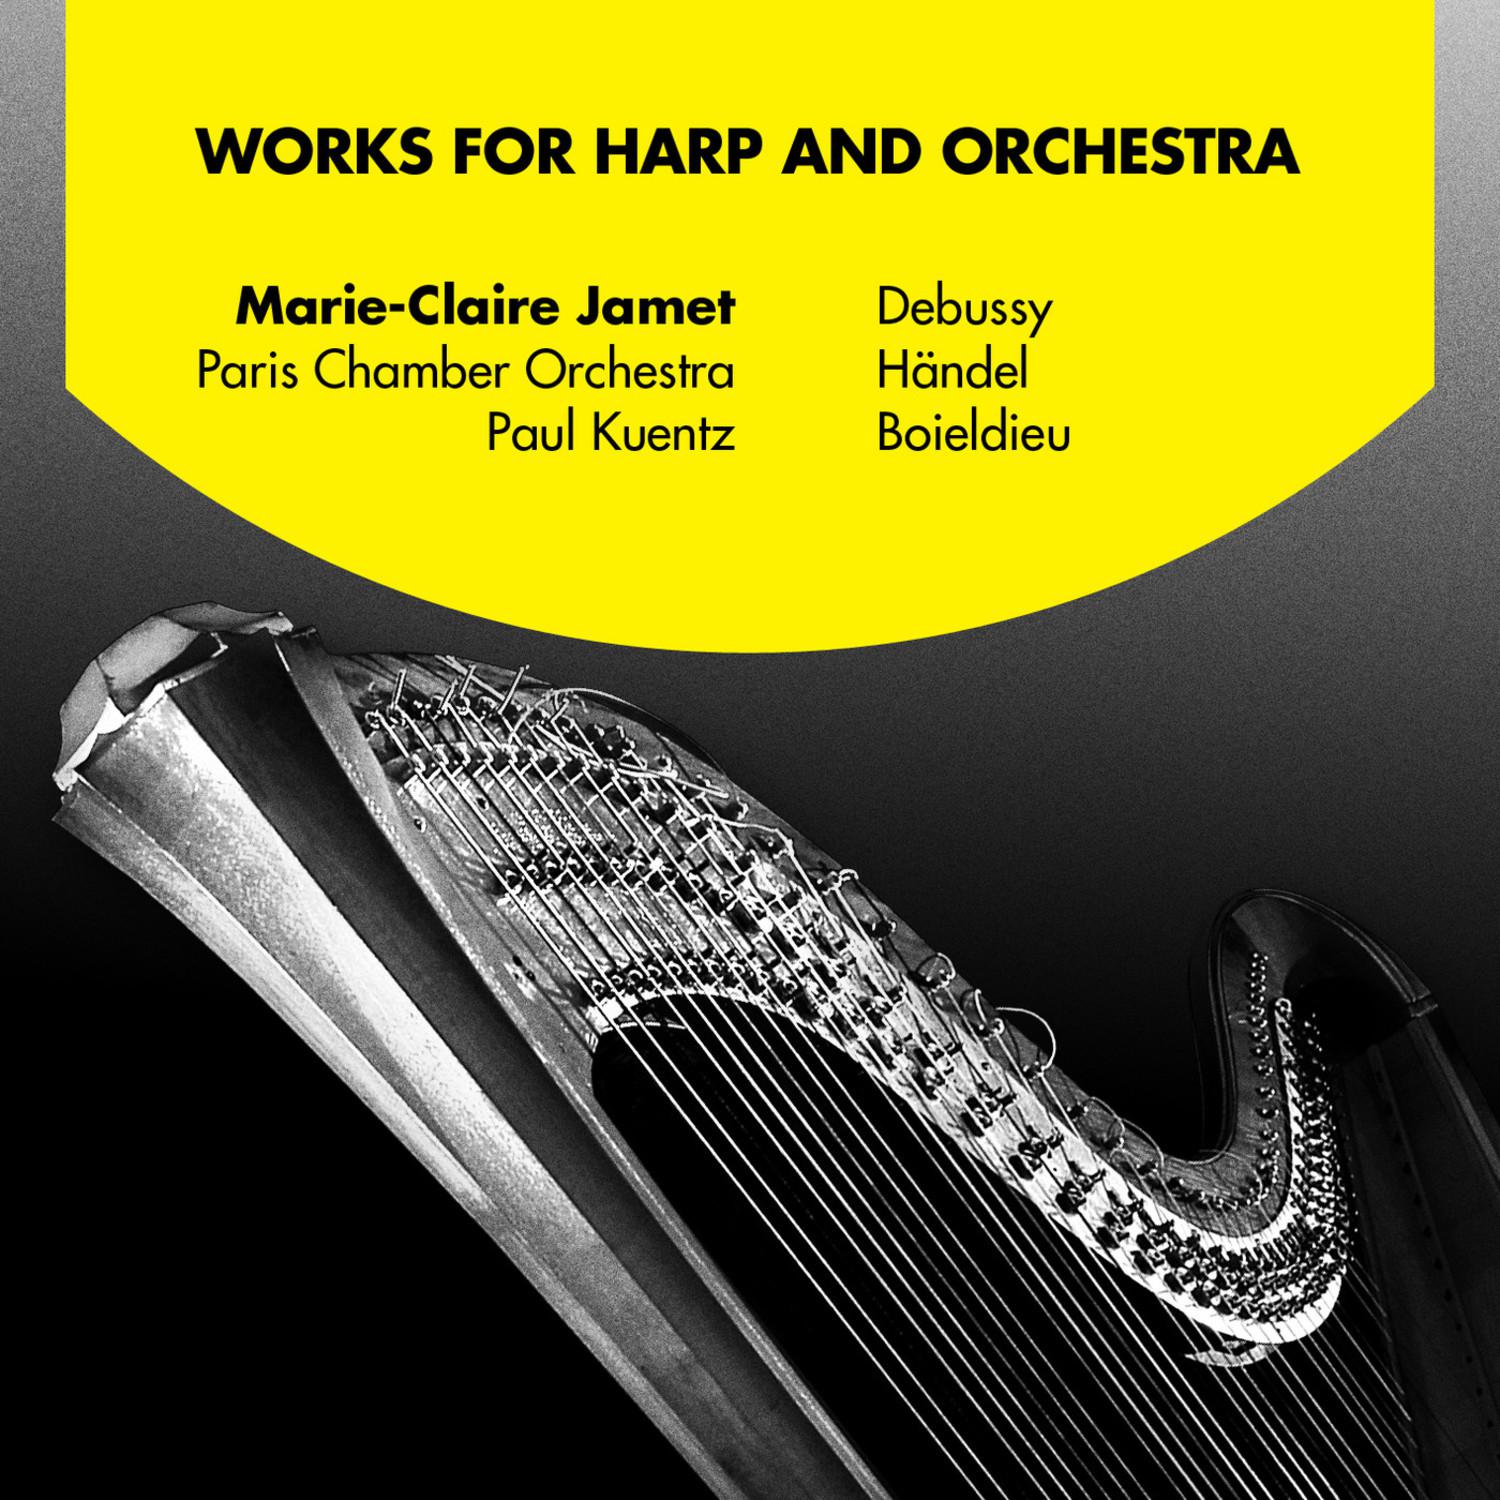 Concerto in C major for Harp and Orchestra: I. Allegro brilliante